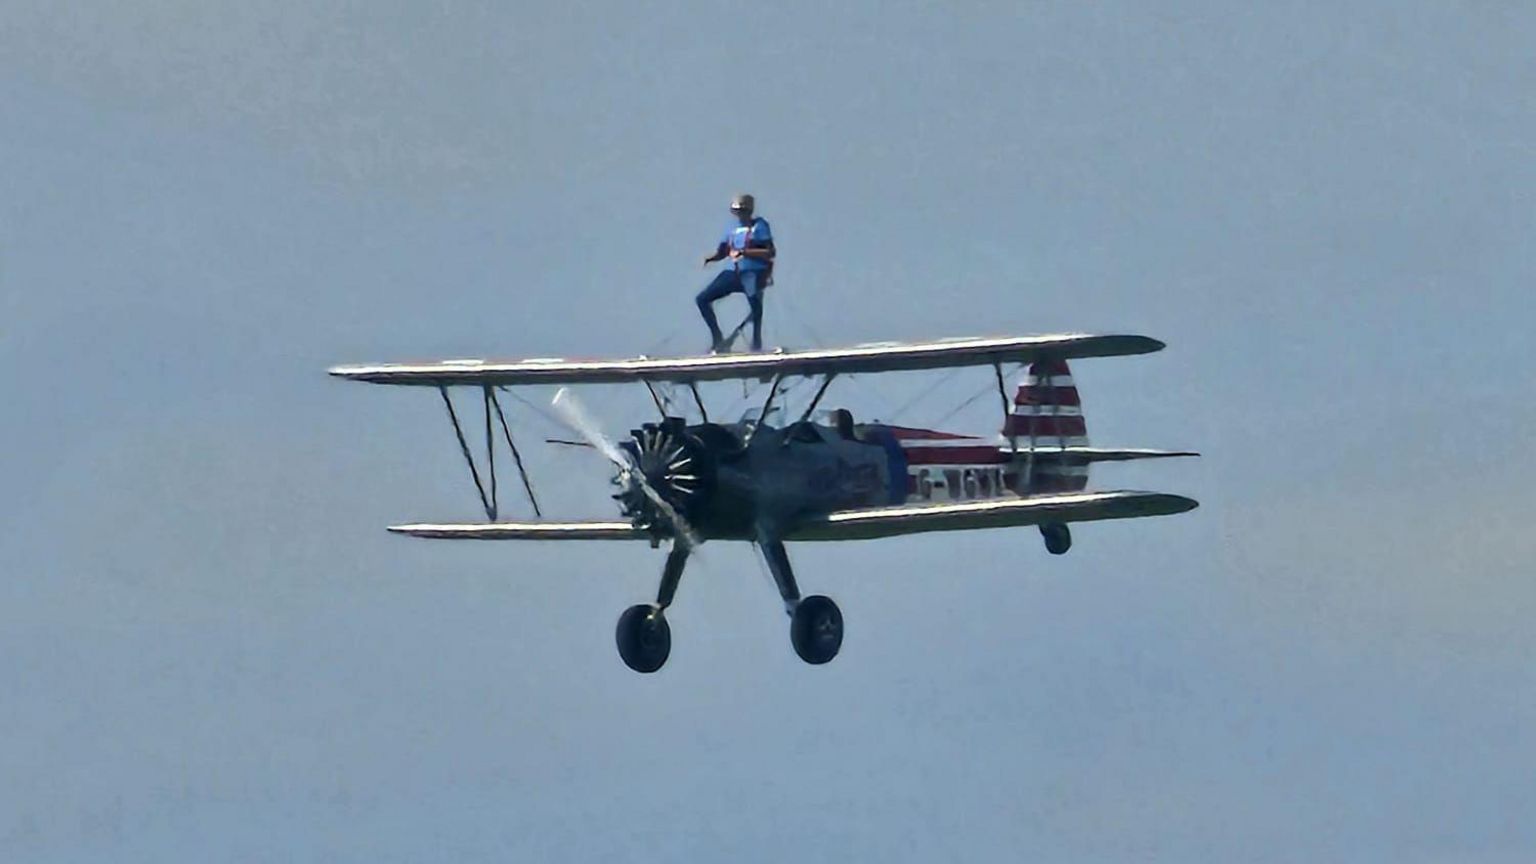 Woman wing-walking on a biplane in flight